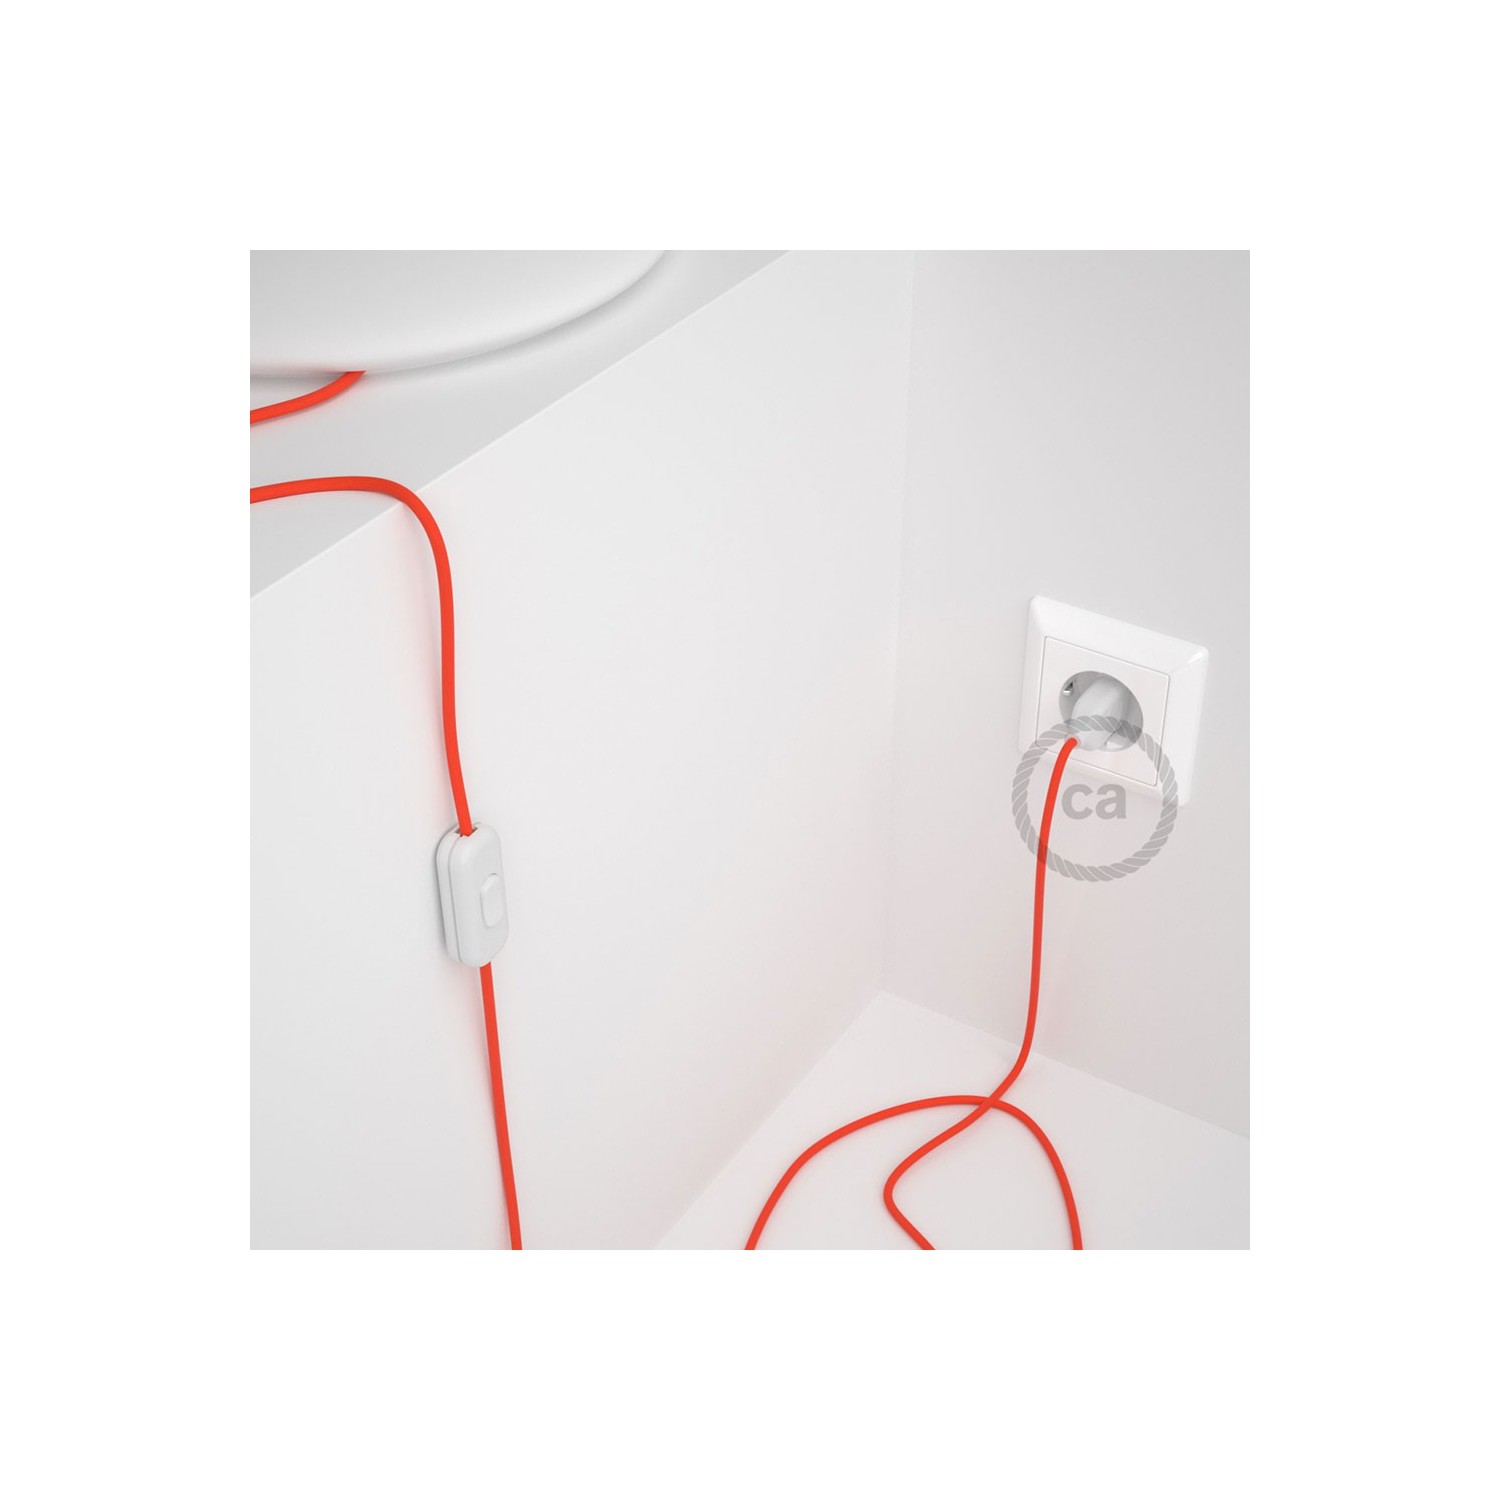 Cableado para lámpara, cable RF15 Efecto Seda Naranja Flùo 1,8m. Elige tu el color de la clavija y del interruptor!